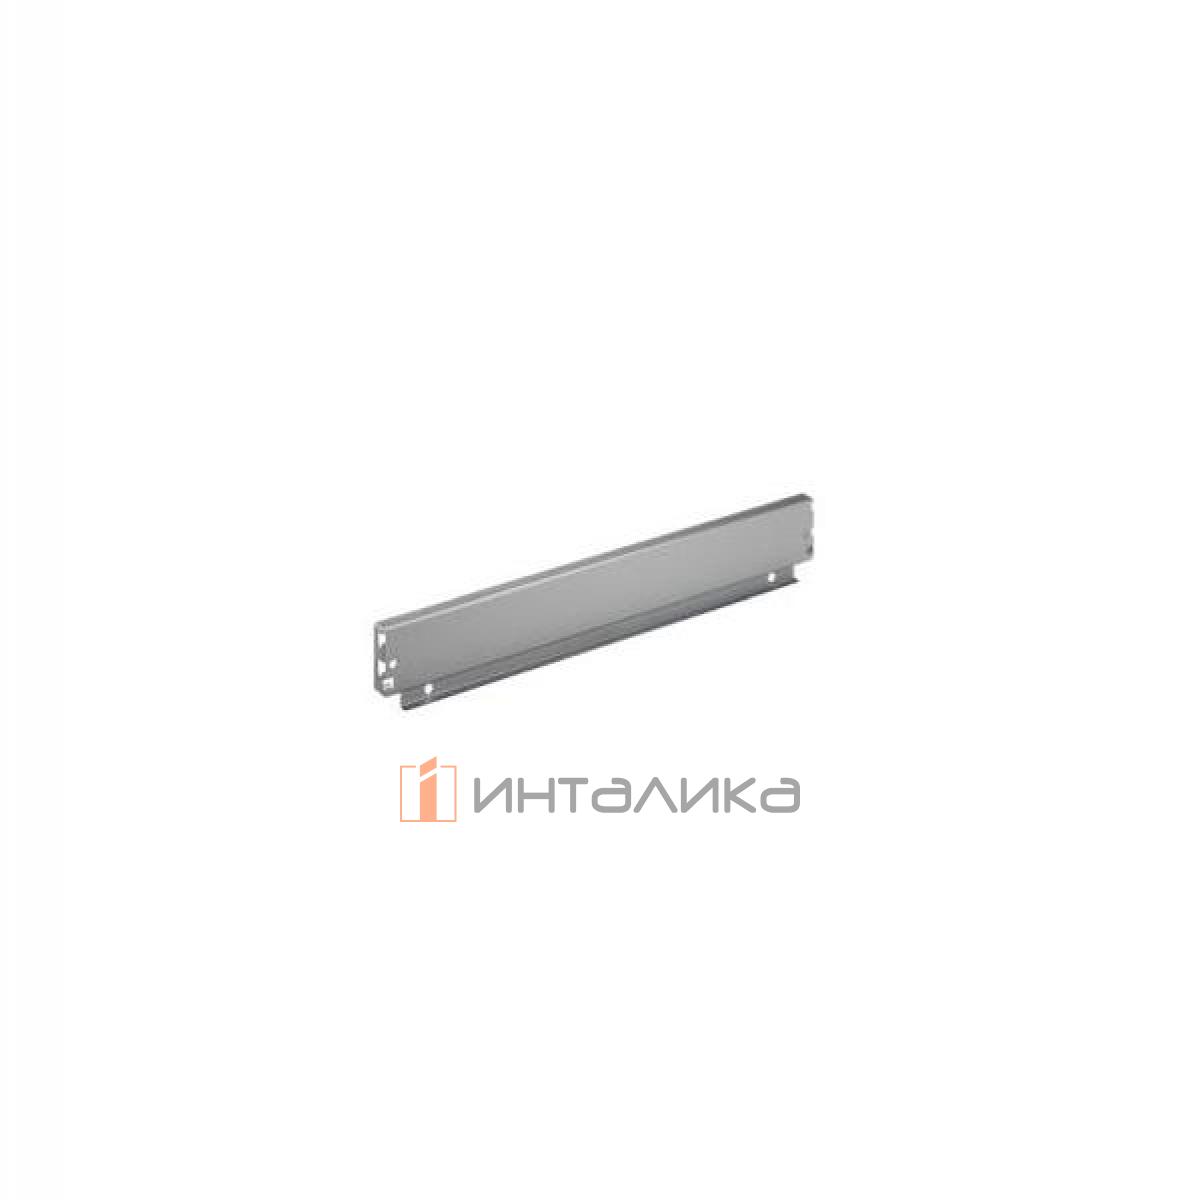 Задняя стенка HETTICH InnoTech/InnoTech Atira, высота 70мм, H450 мм, сталь, цвет серебристый, (V40)